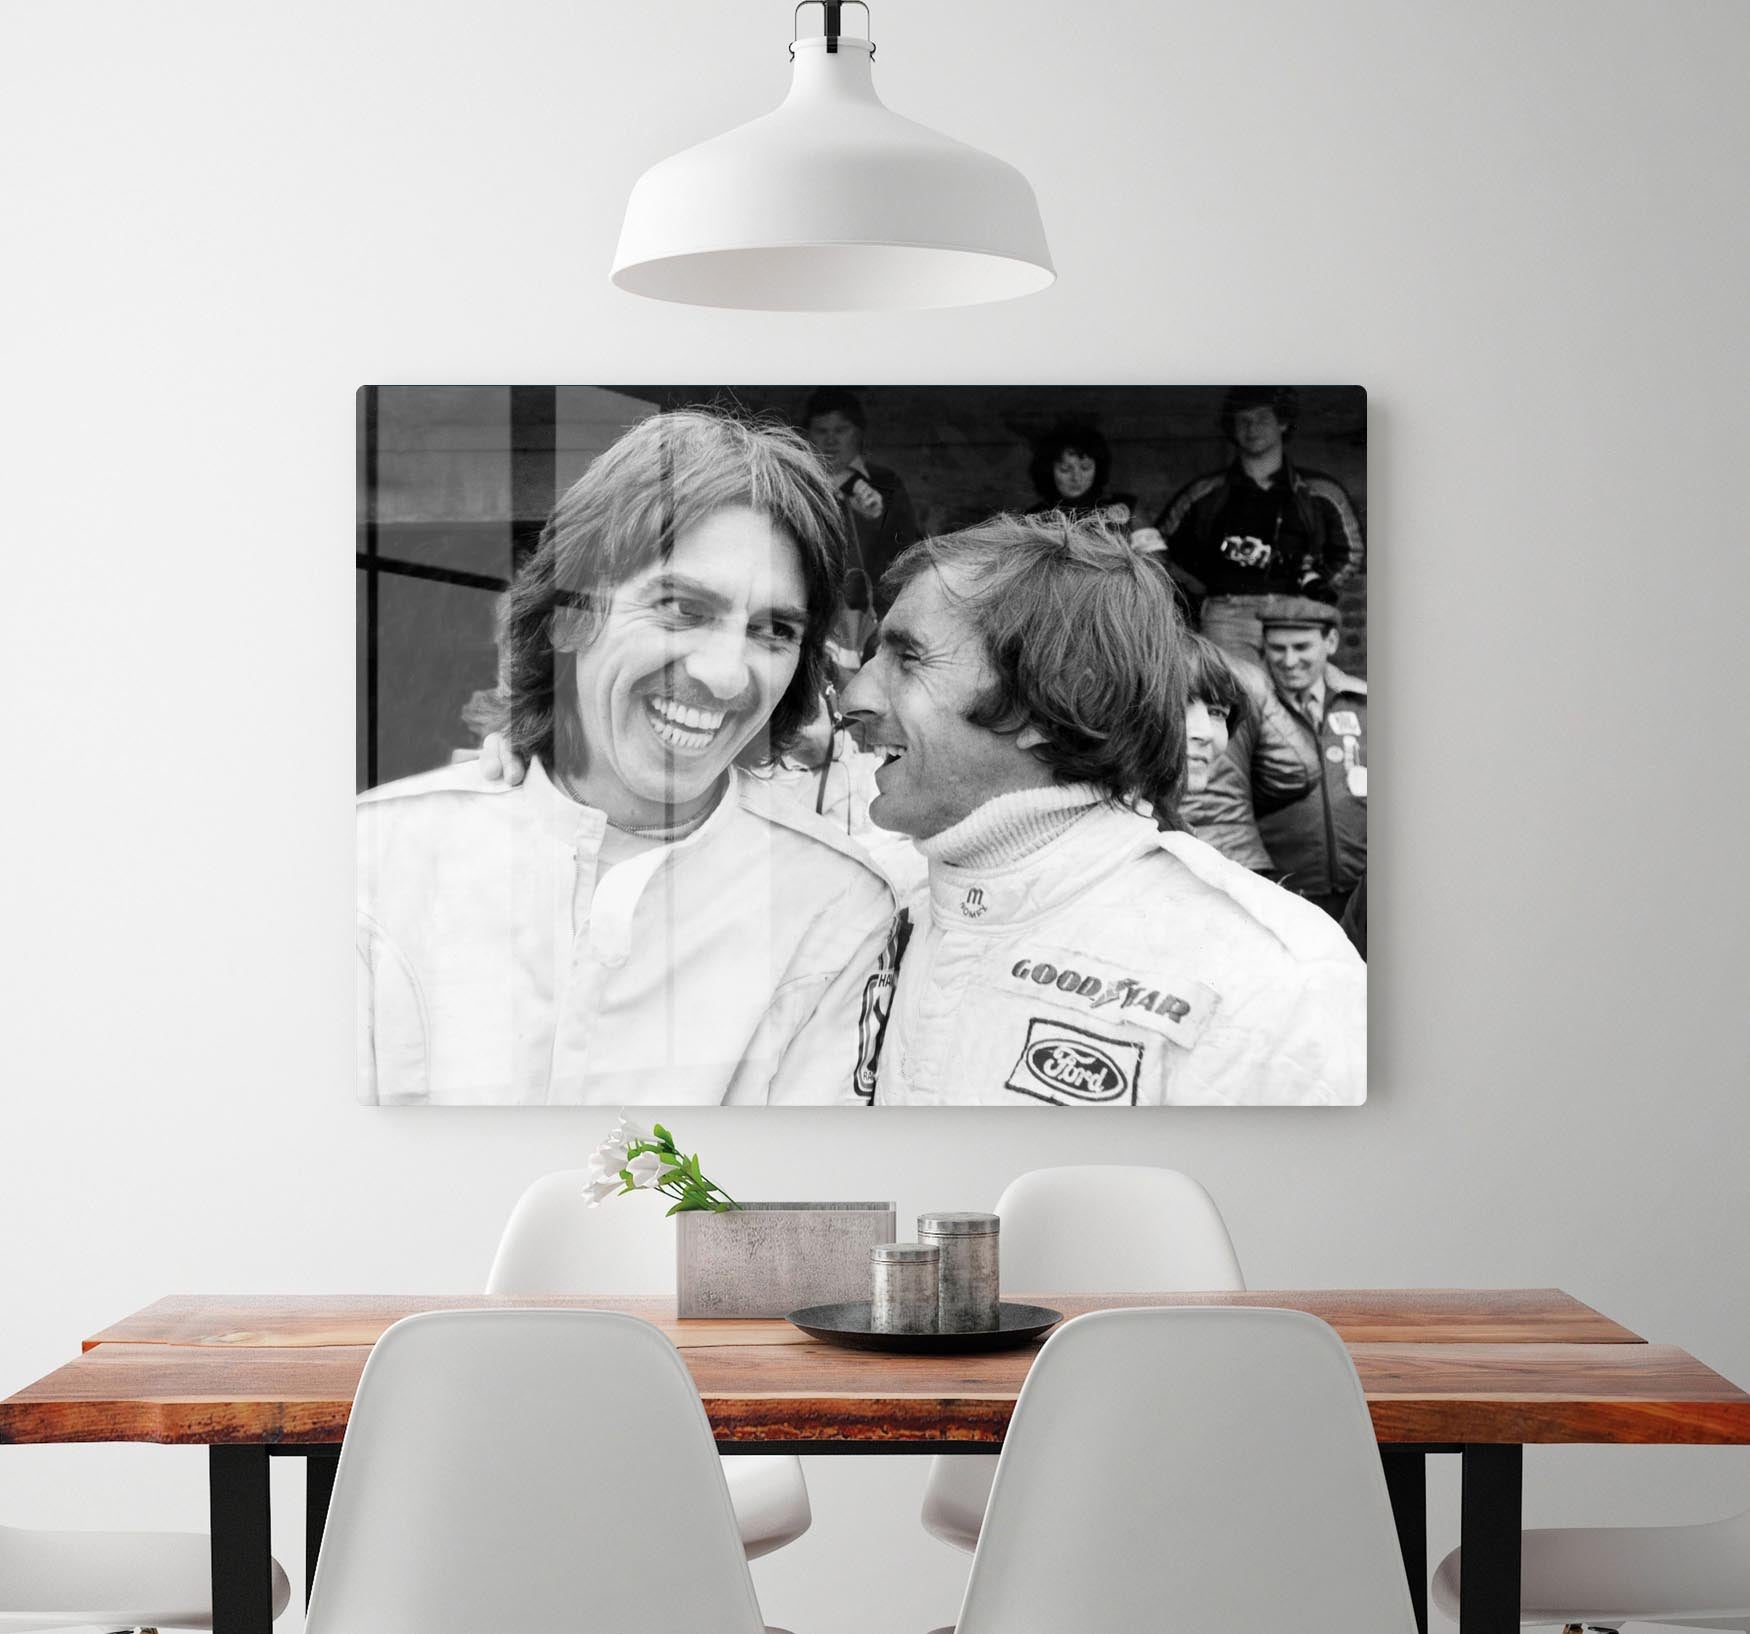 George Harrison and racing driver Jackie Stewart HD Metal Print